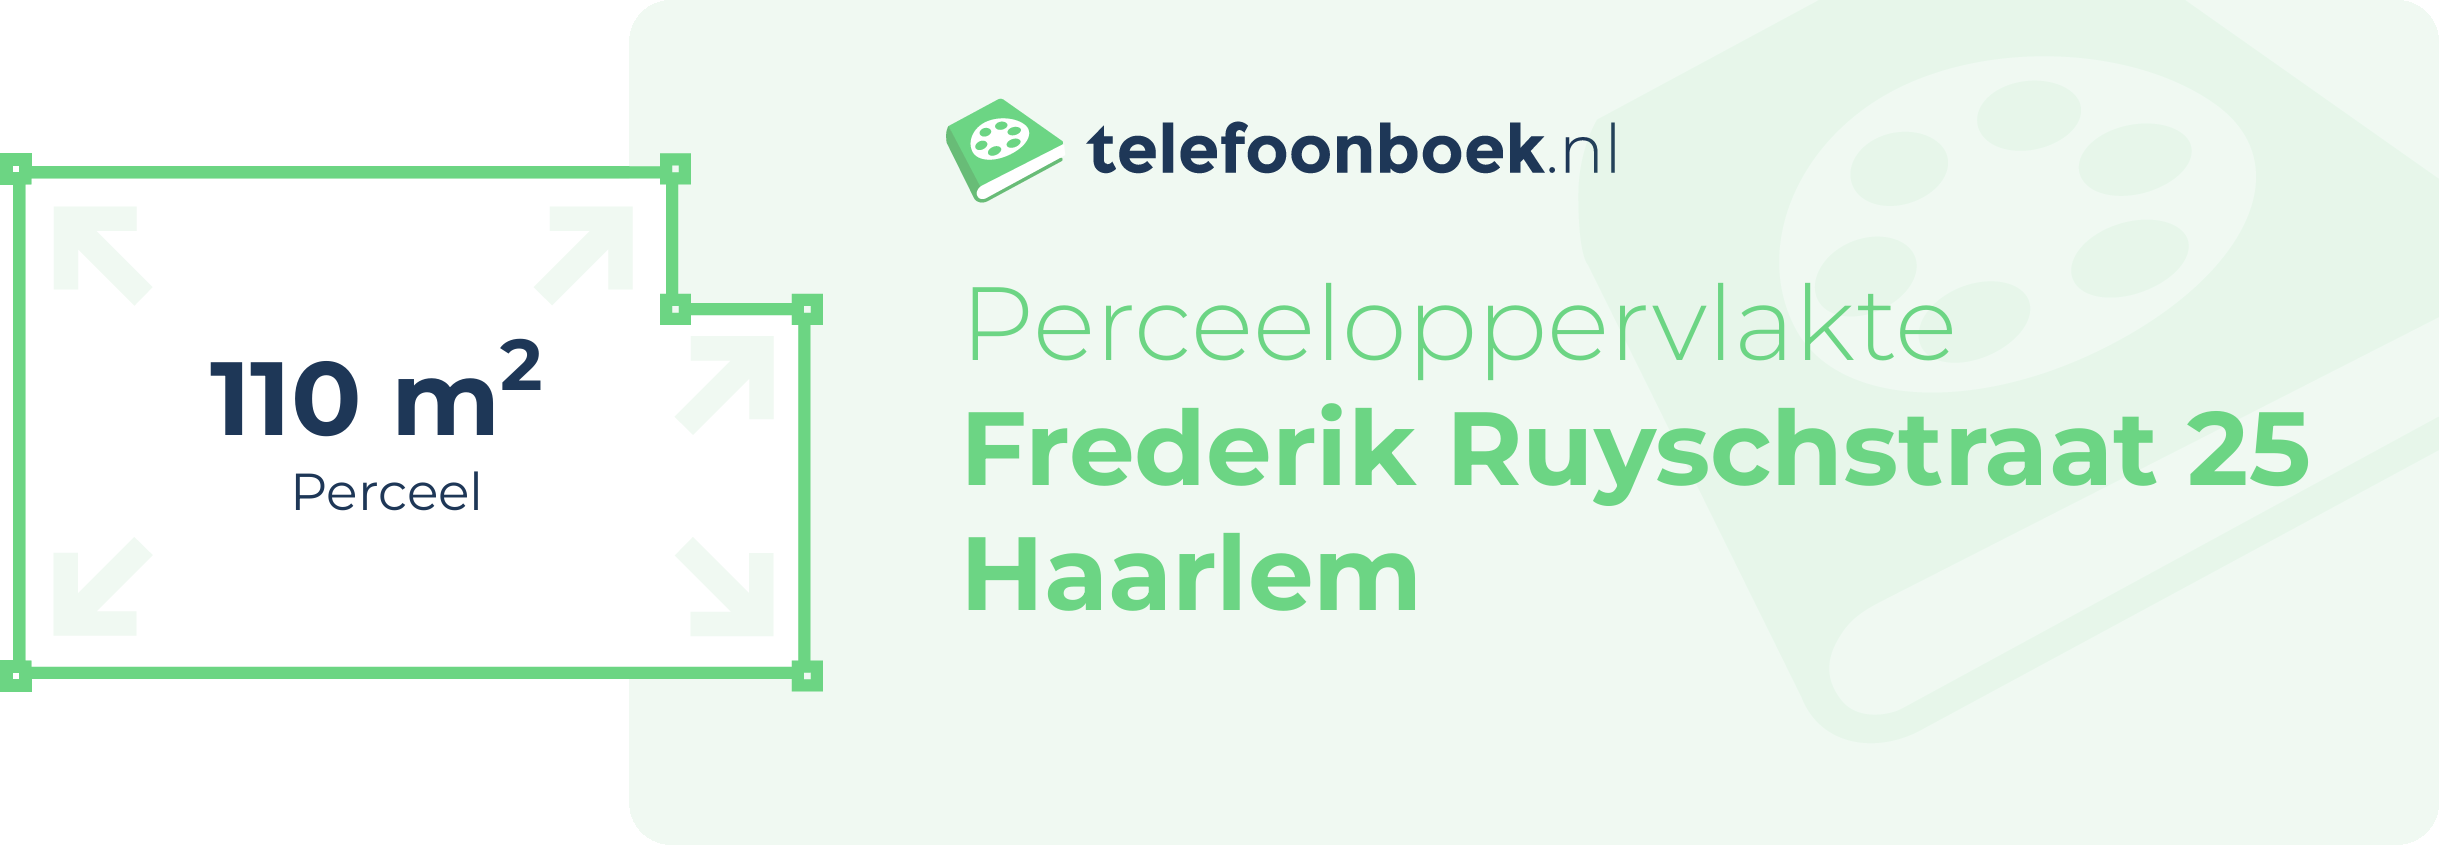 Perceeloppervlakte Frederik Ruyschstraat 25 Haarlem